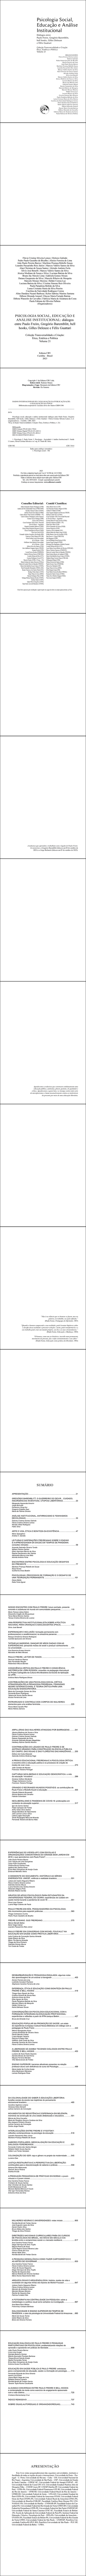 PSICOLOGIA SOCIAL, EDUCAÇÃO E ANÁLISE INSTITUCIONAL <BR> diálogos entre Paulo Freire, Gregório Baremblitt, bell hooks, Gilles Deleuze e Félix Guattari